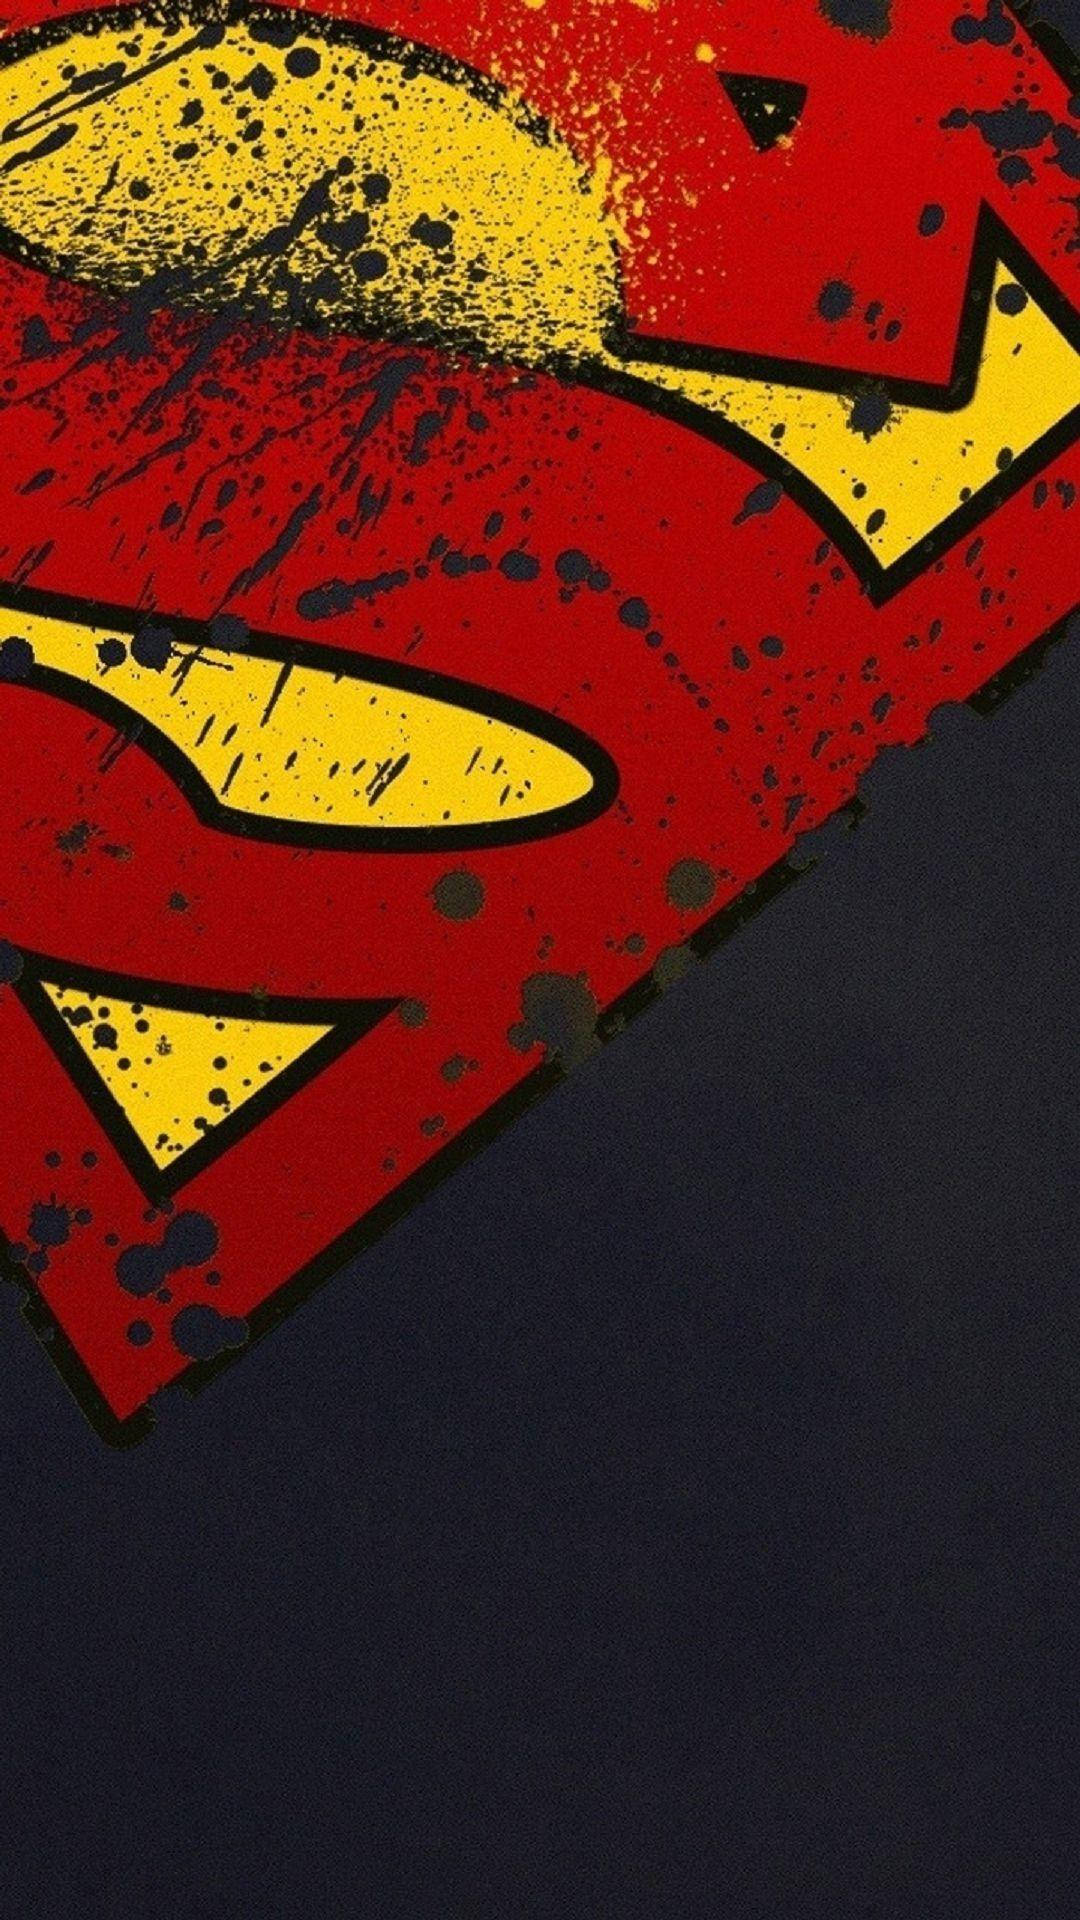 Superhero iPhone 4k Wallpapers - Wallpaper Cave